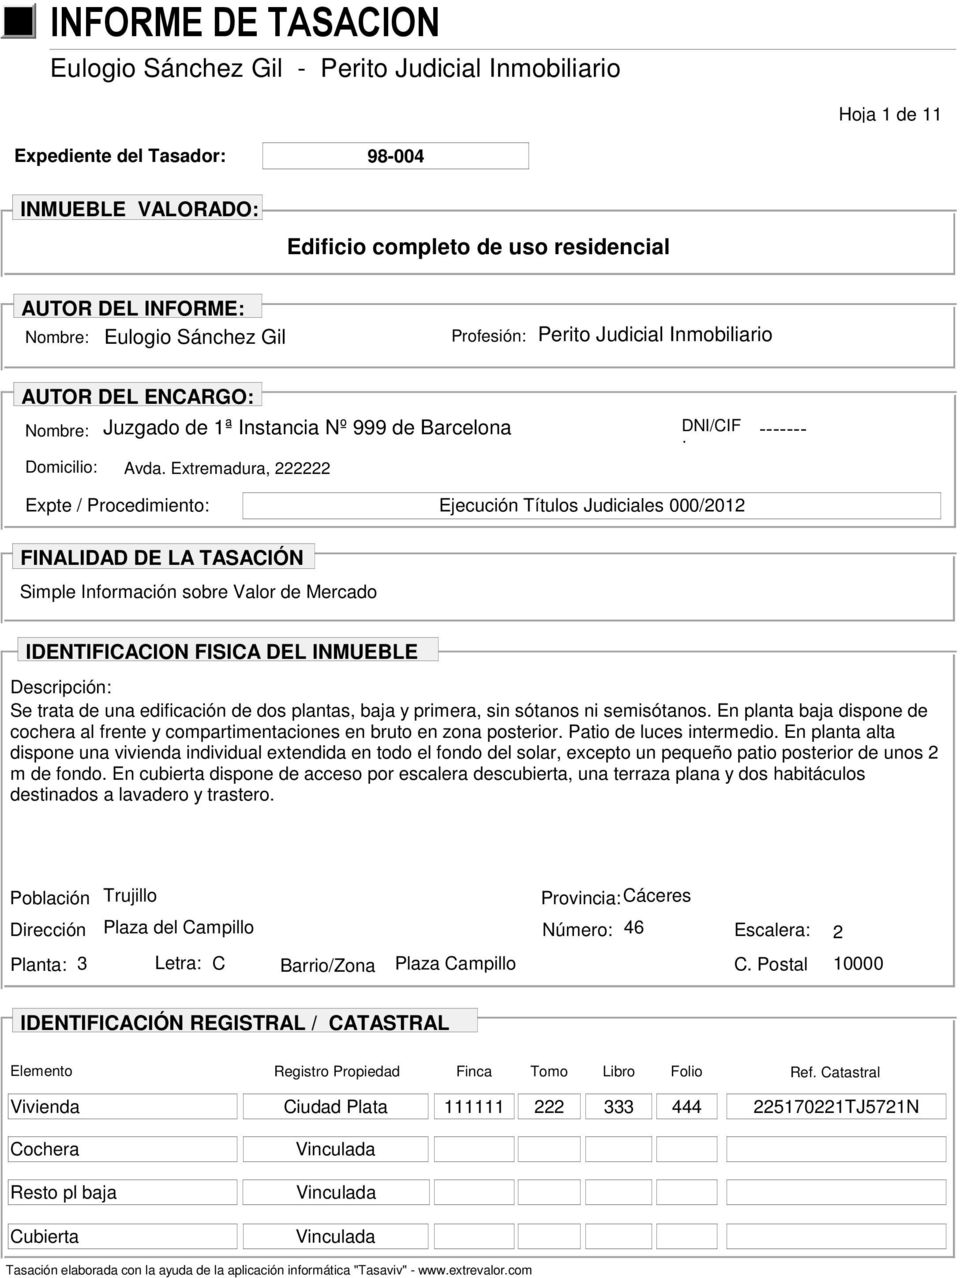 Extremadura, 222222 DNI/CIF : ------- Expte / Procedimiento: Ejecución Títulos Judiciales 000/2012 FINALIDAD DE LA TASACIÓN Simple Información sobre Valor de Mercado IDENTIFICACION FISICA DEL